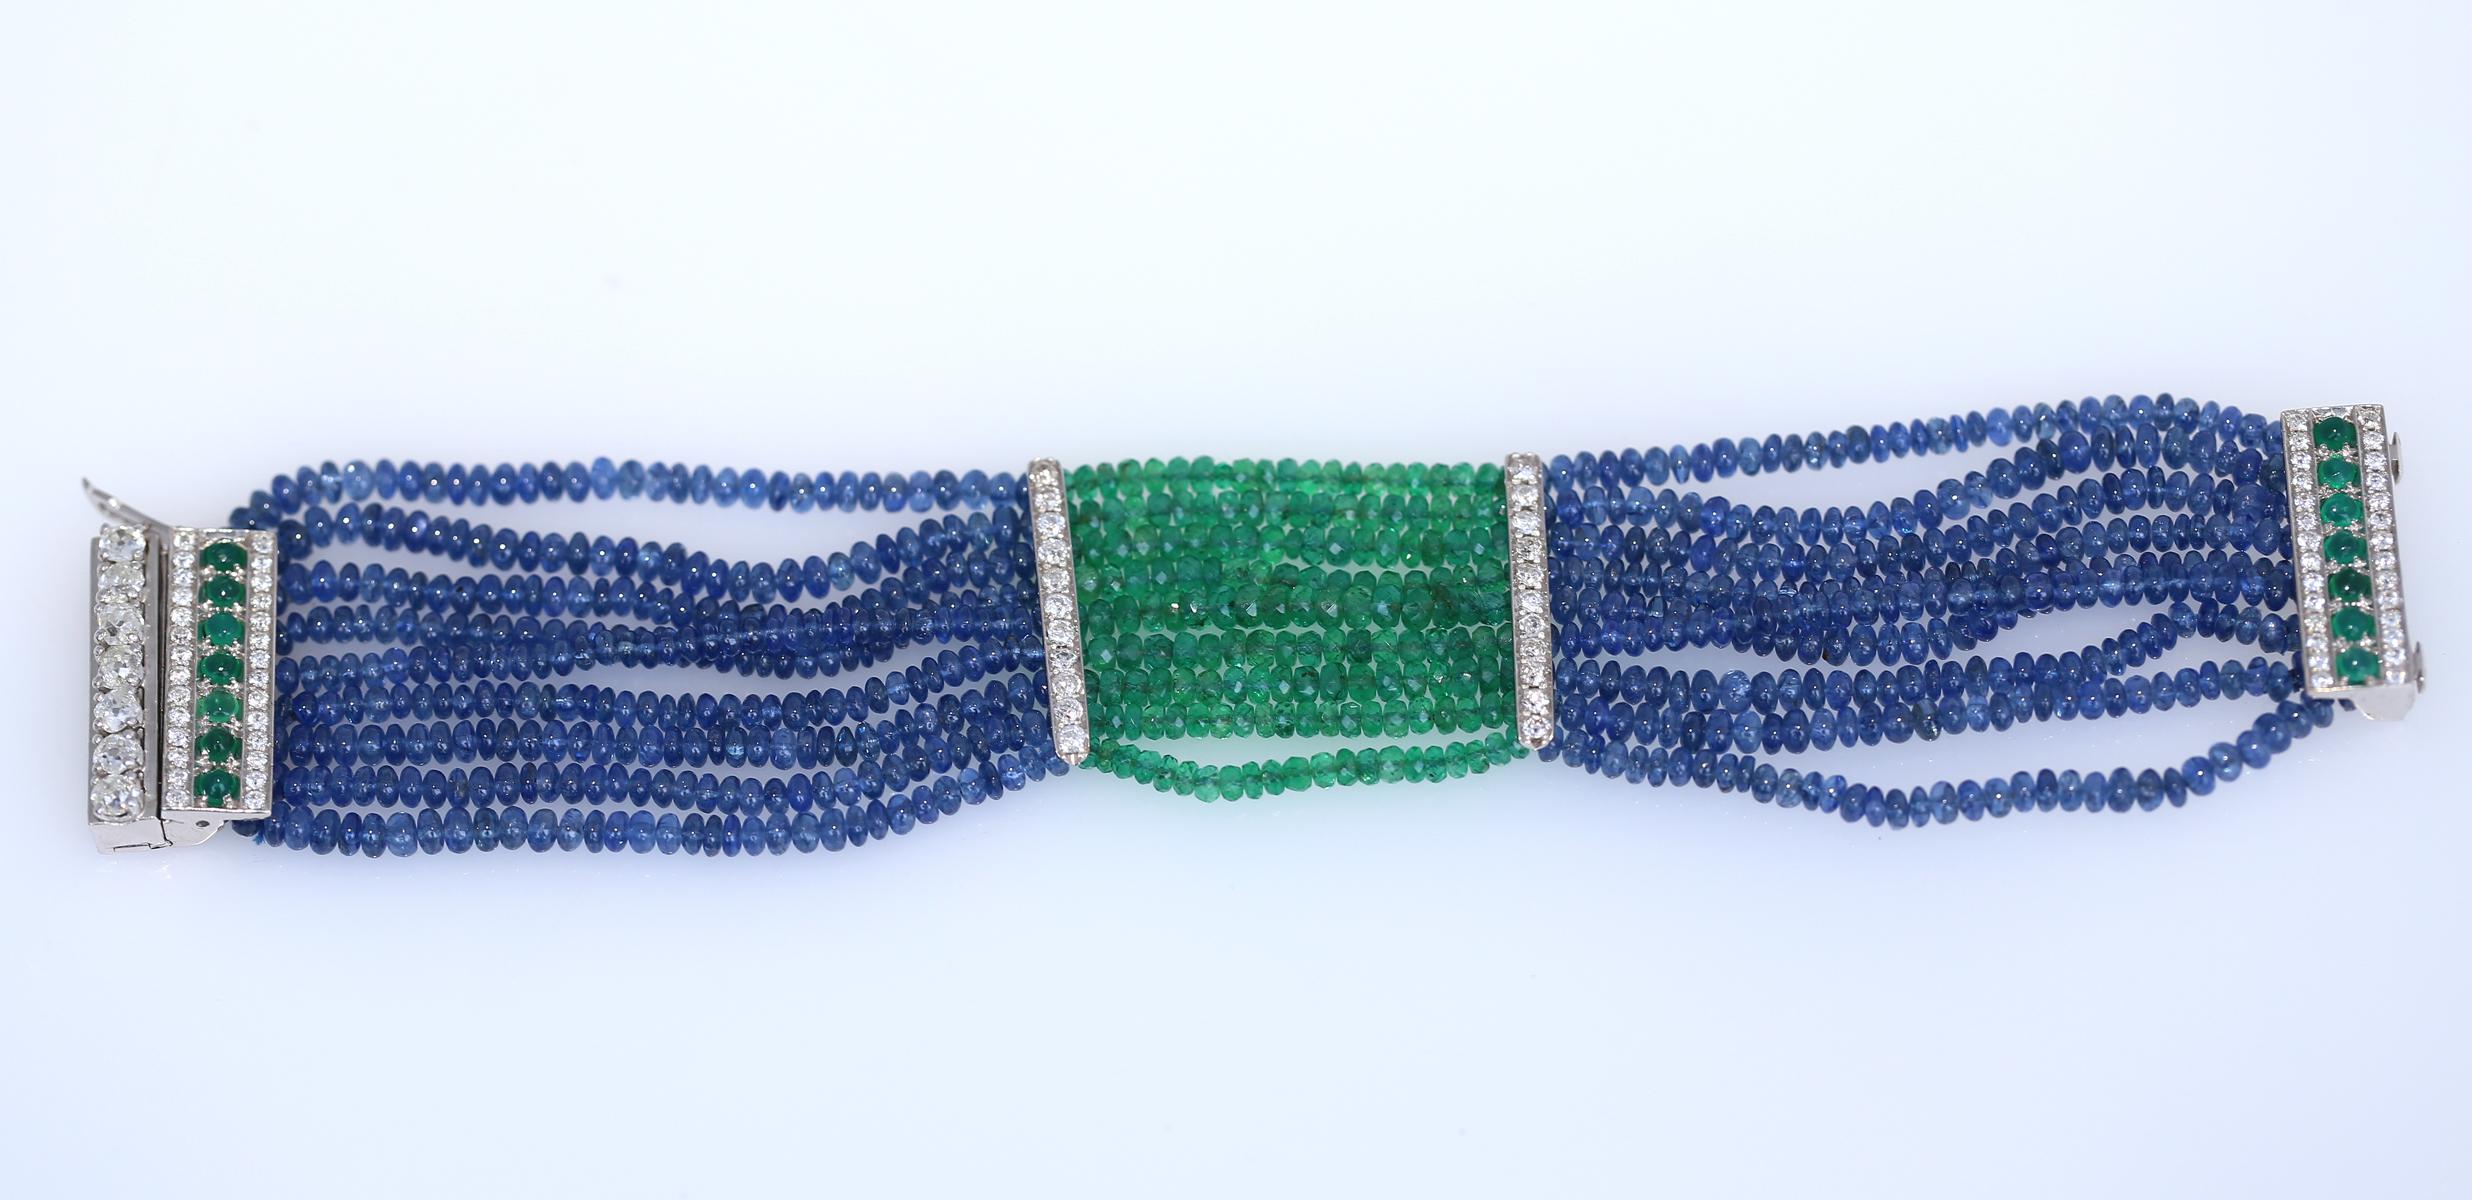 Armband mit Smaragd, Saphir und Diamanten. Entstanden in den 1970er Jahren.
Ein mehrreihiges Armband mit Saphiren und Smaragden. Feine Smaragde mit grünen Facetten. Saphir-Perlen. Eine Reihe von feinen Rundschliff-Diamanten und Cabochon-Smaragden im